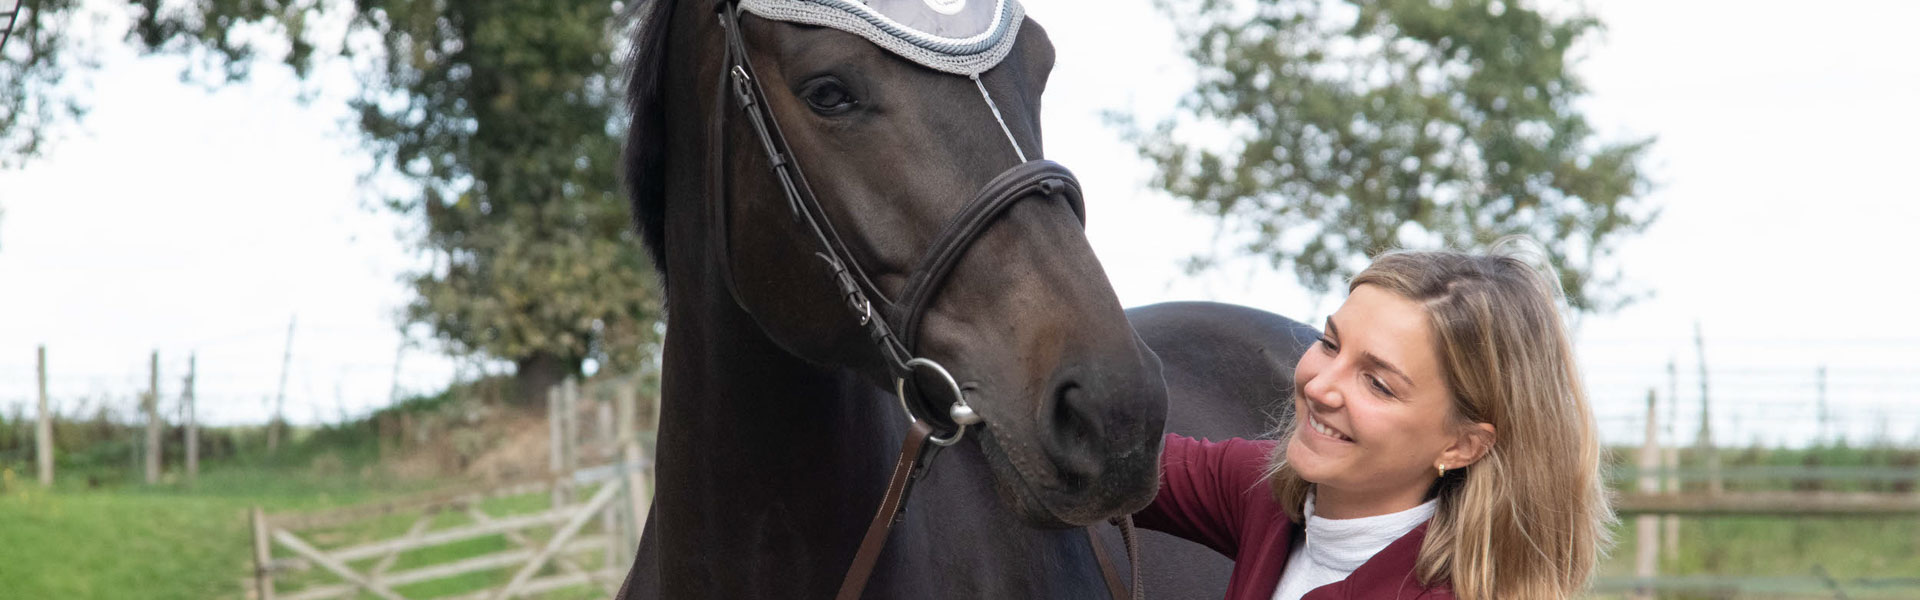 attacher bonnet cheval equitation correctement remonte gêne bouge oreille